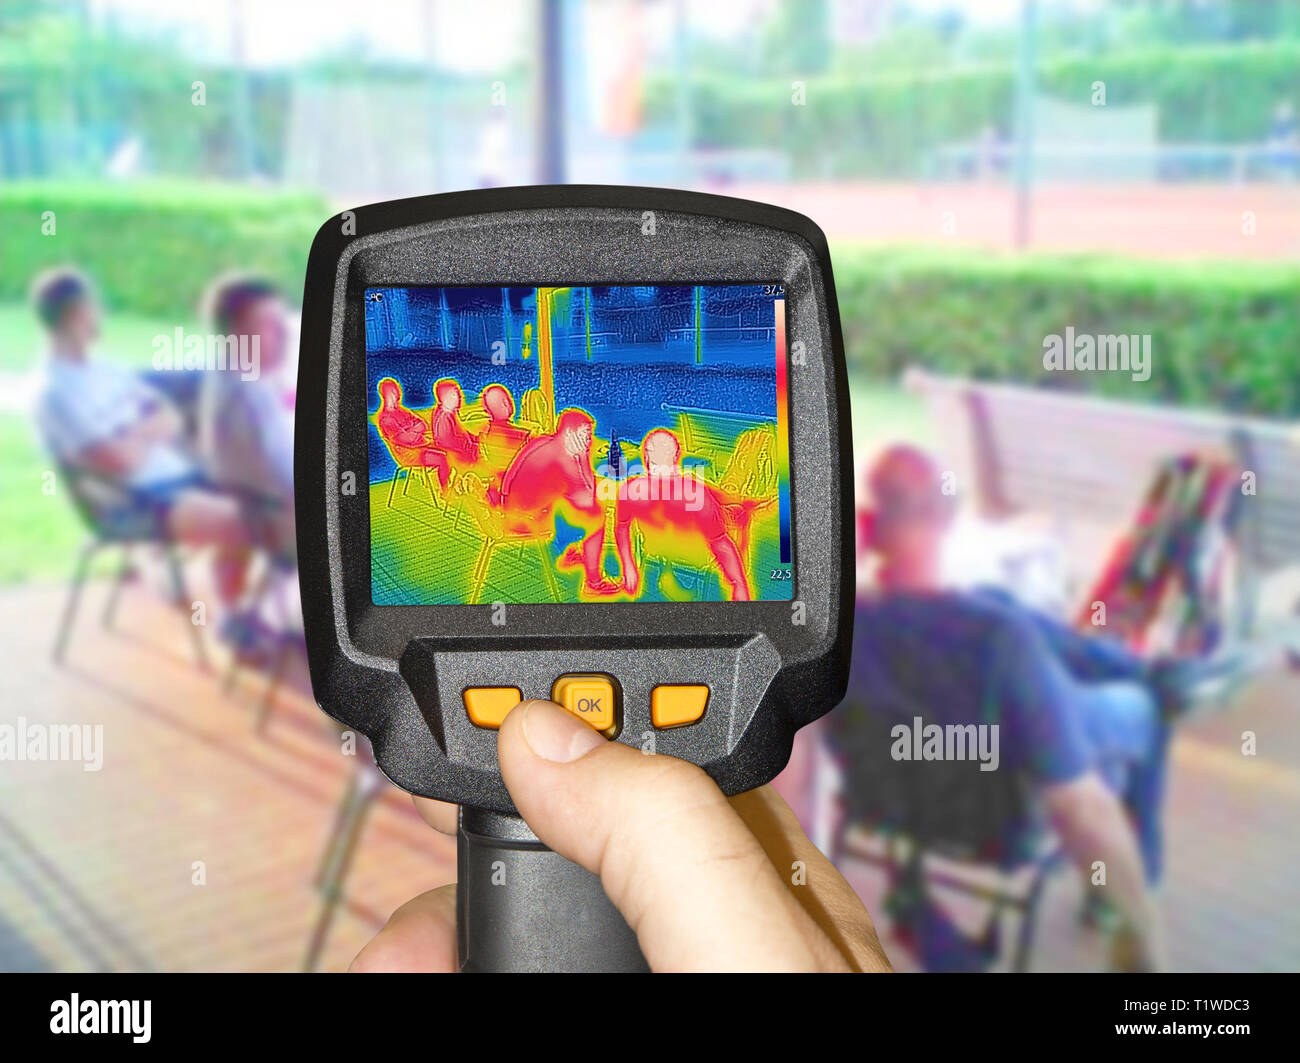 La registrazione di pentecoste thermovision a infrarossi fotocamera quando persone sedersi a tavola in estate Foto Stock